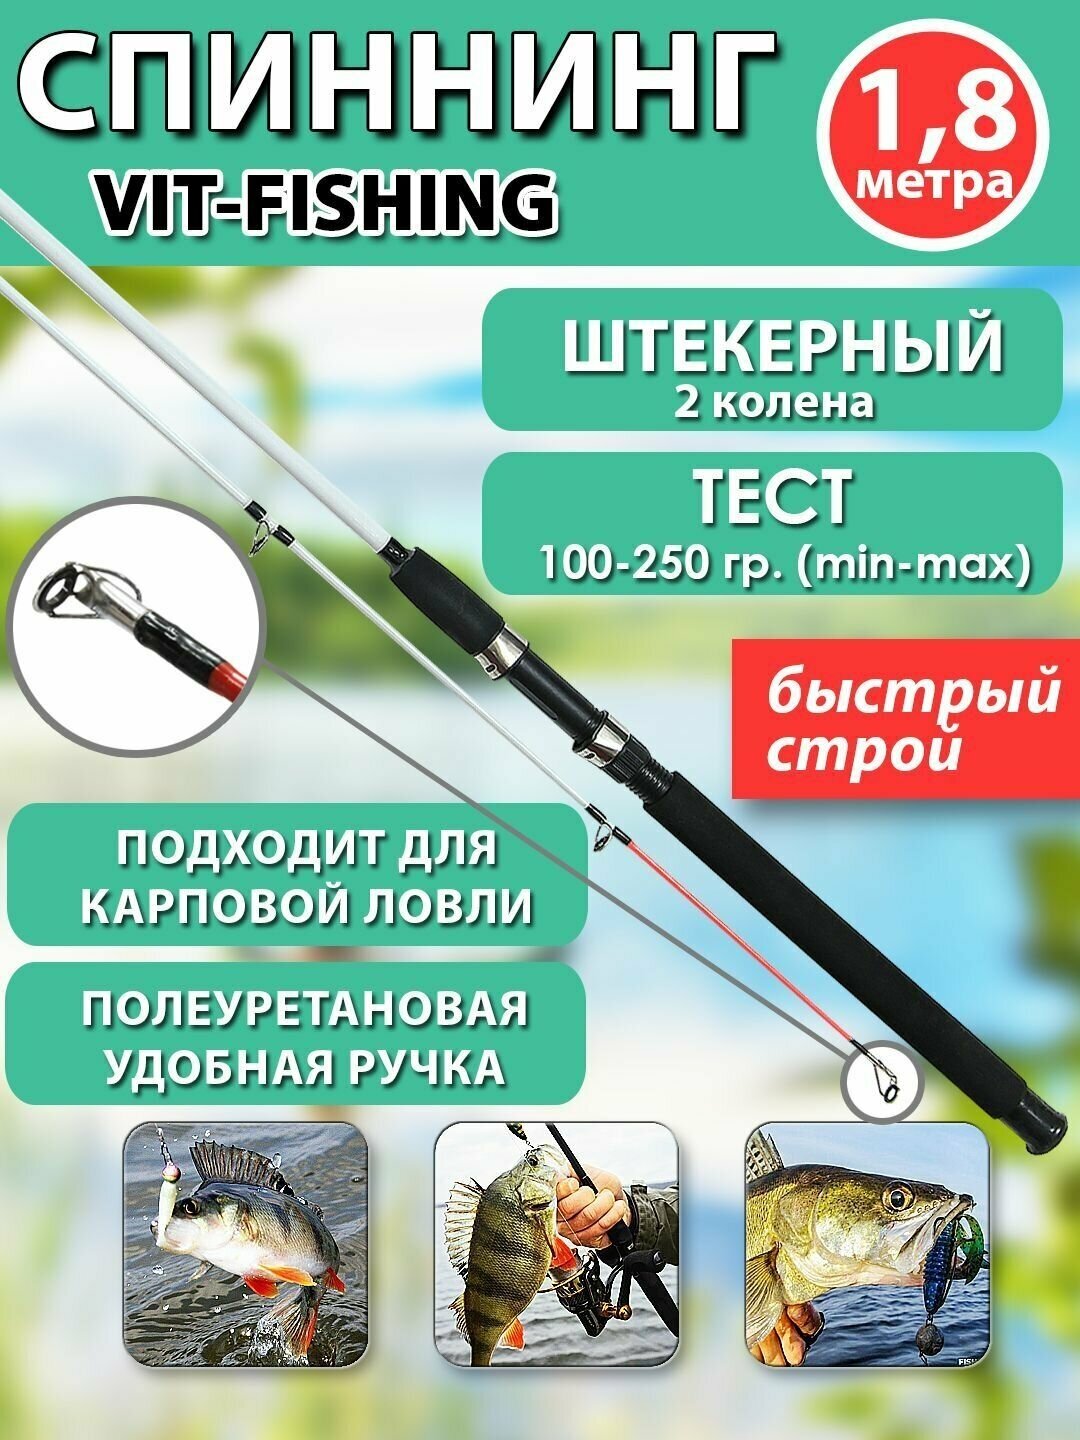 Спиннинг фидерный VITFISHING, штекерный 2 колена, 1.8 м, для летней рыбалки черный, быстрый строй, тест 100-250